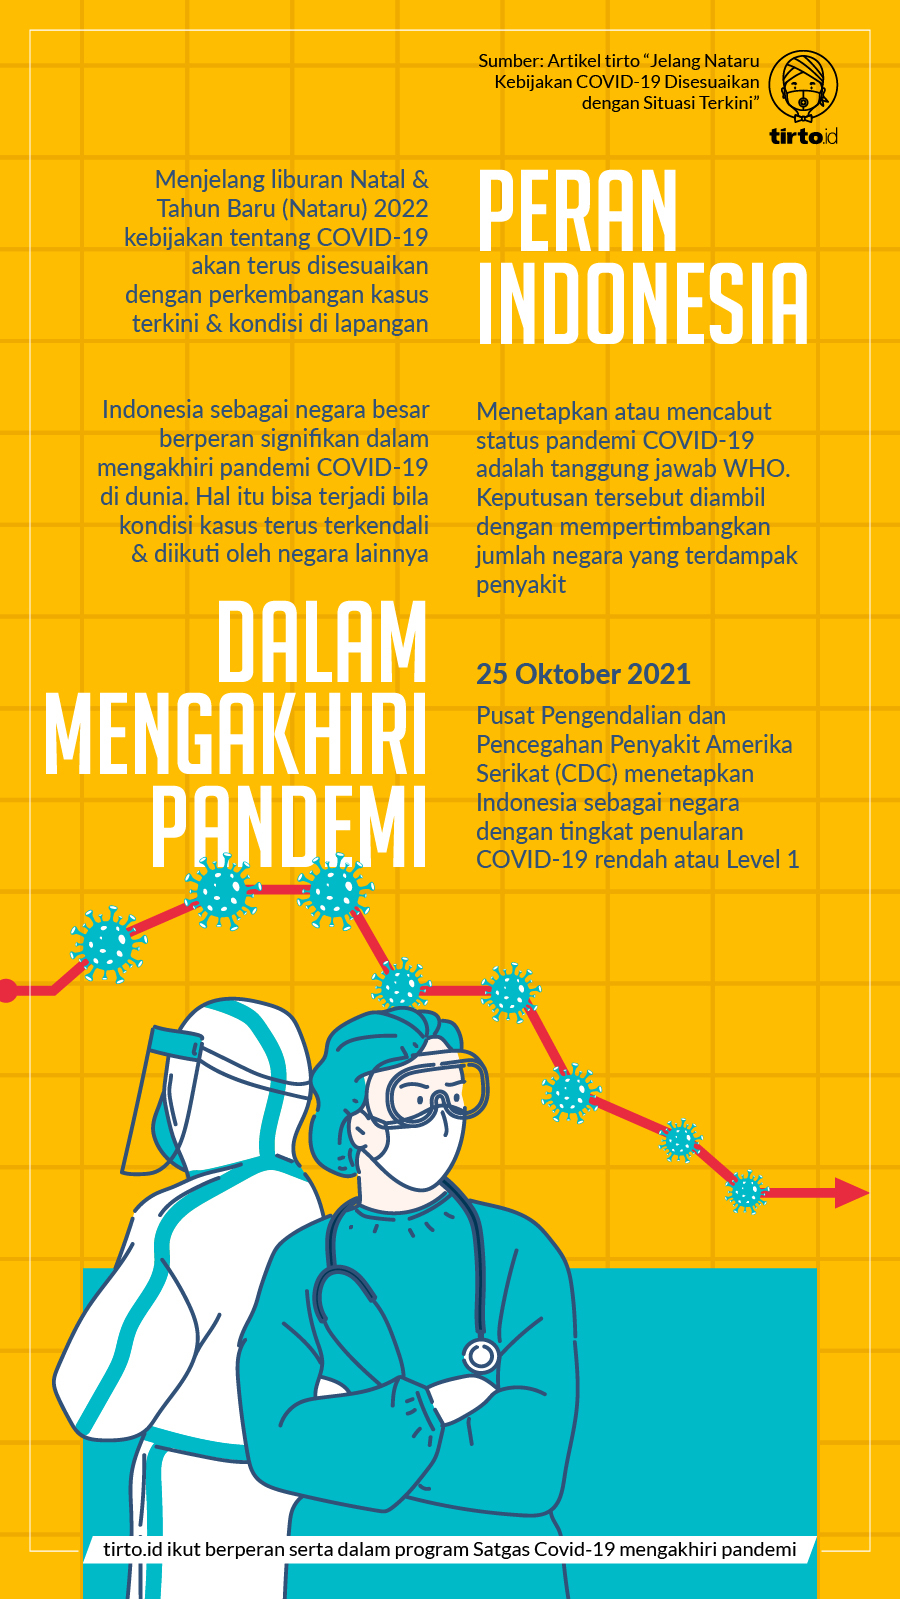 Infografik BNPB Peran Indonesia dalam Mengakhiri Pandemi 3 Nov